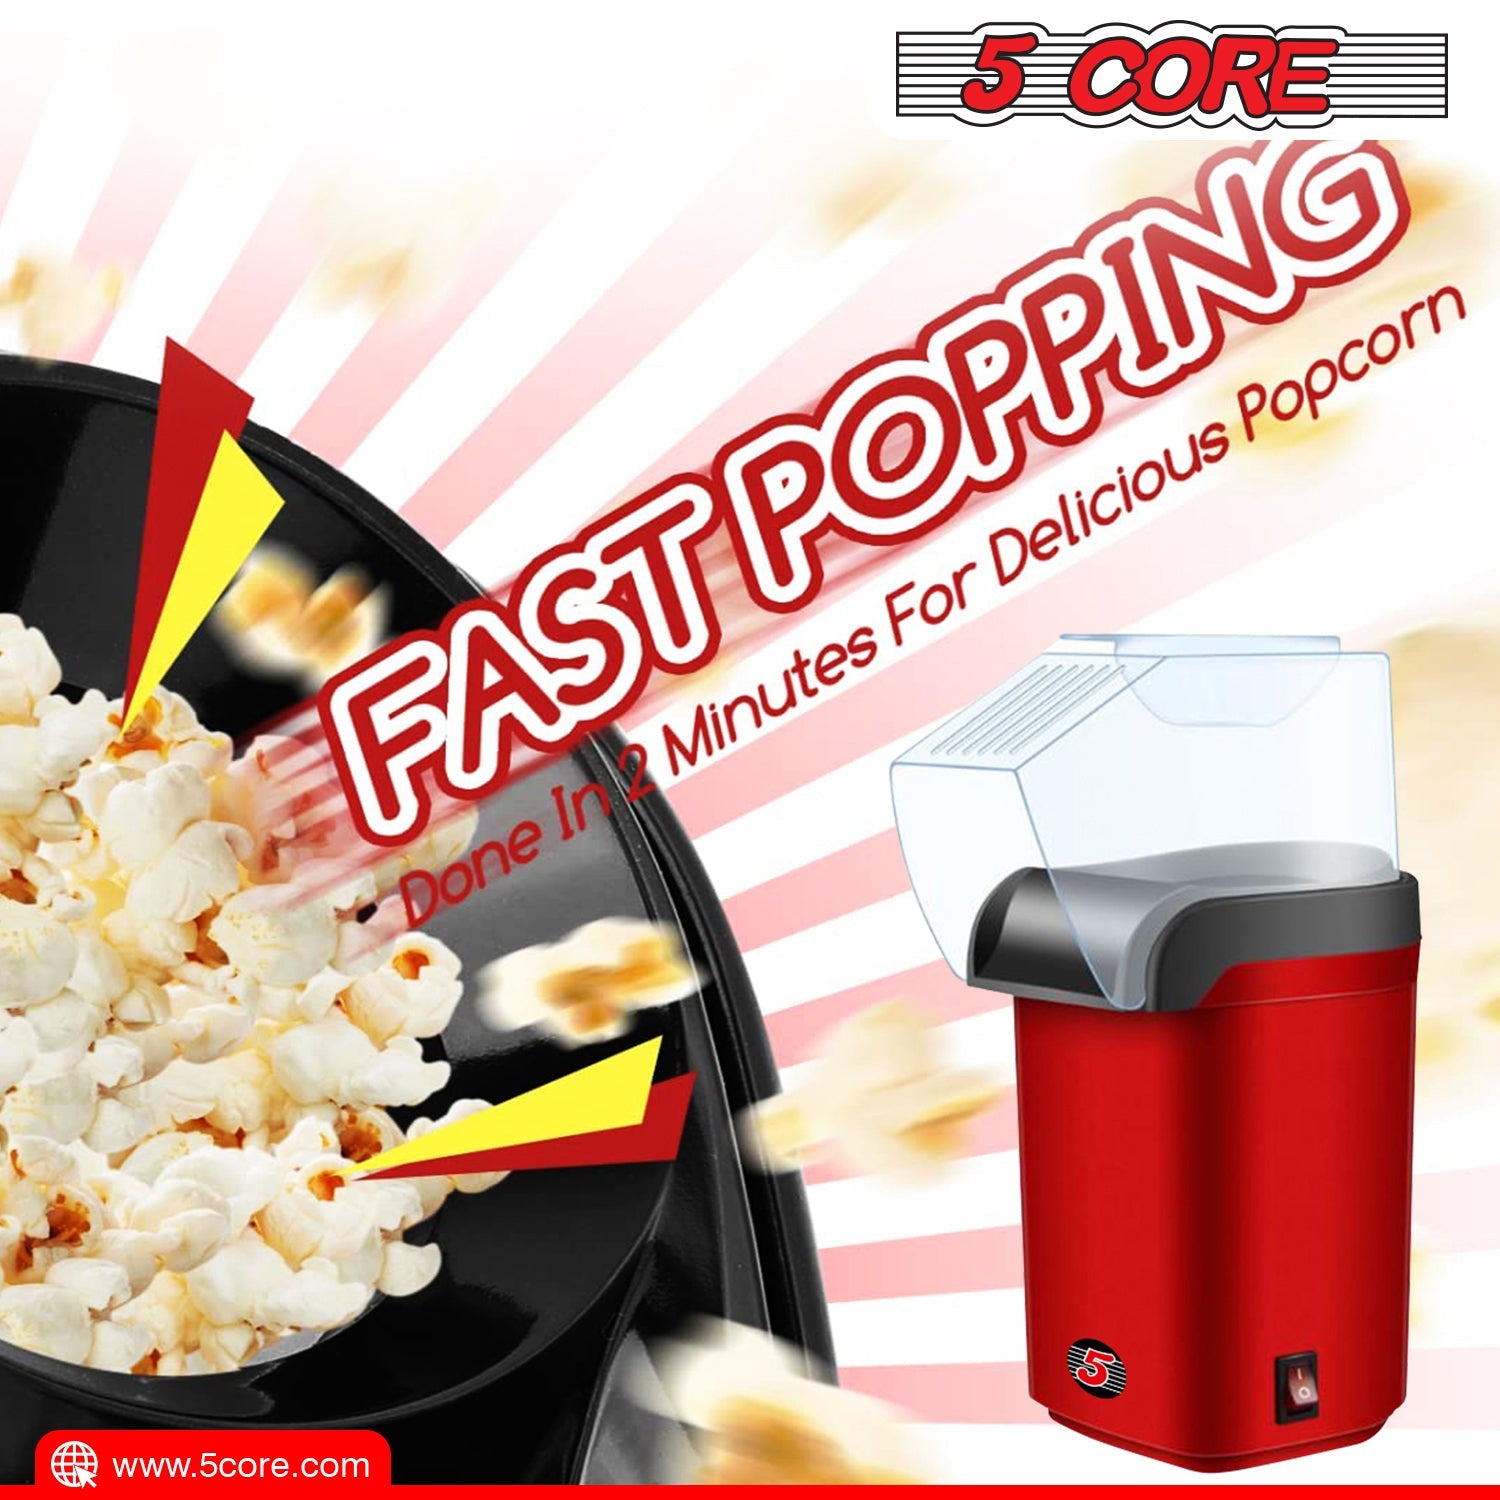 Popcorn Machine Hot Air Electric Popper Kernel Corn Maker - The Big Screen Store